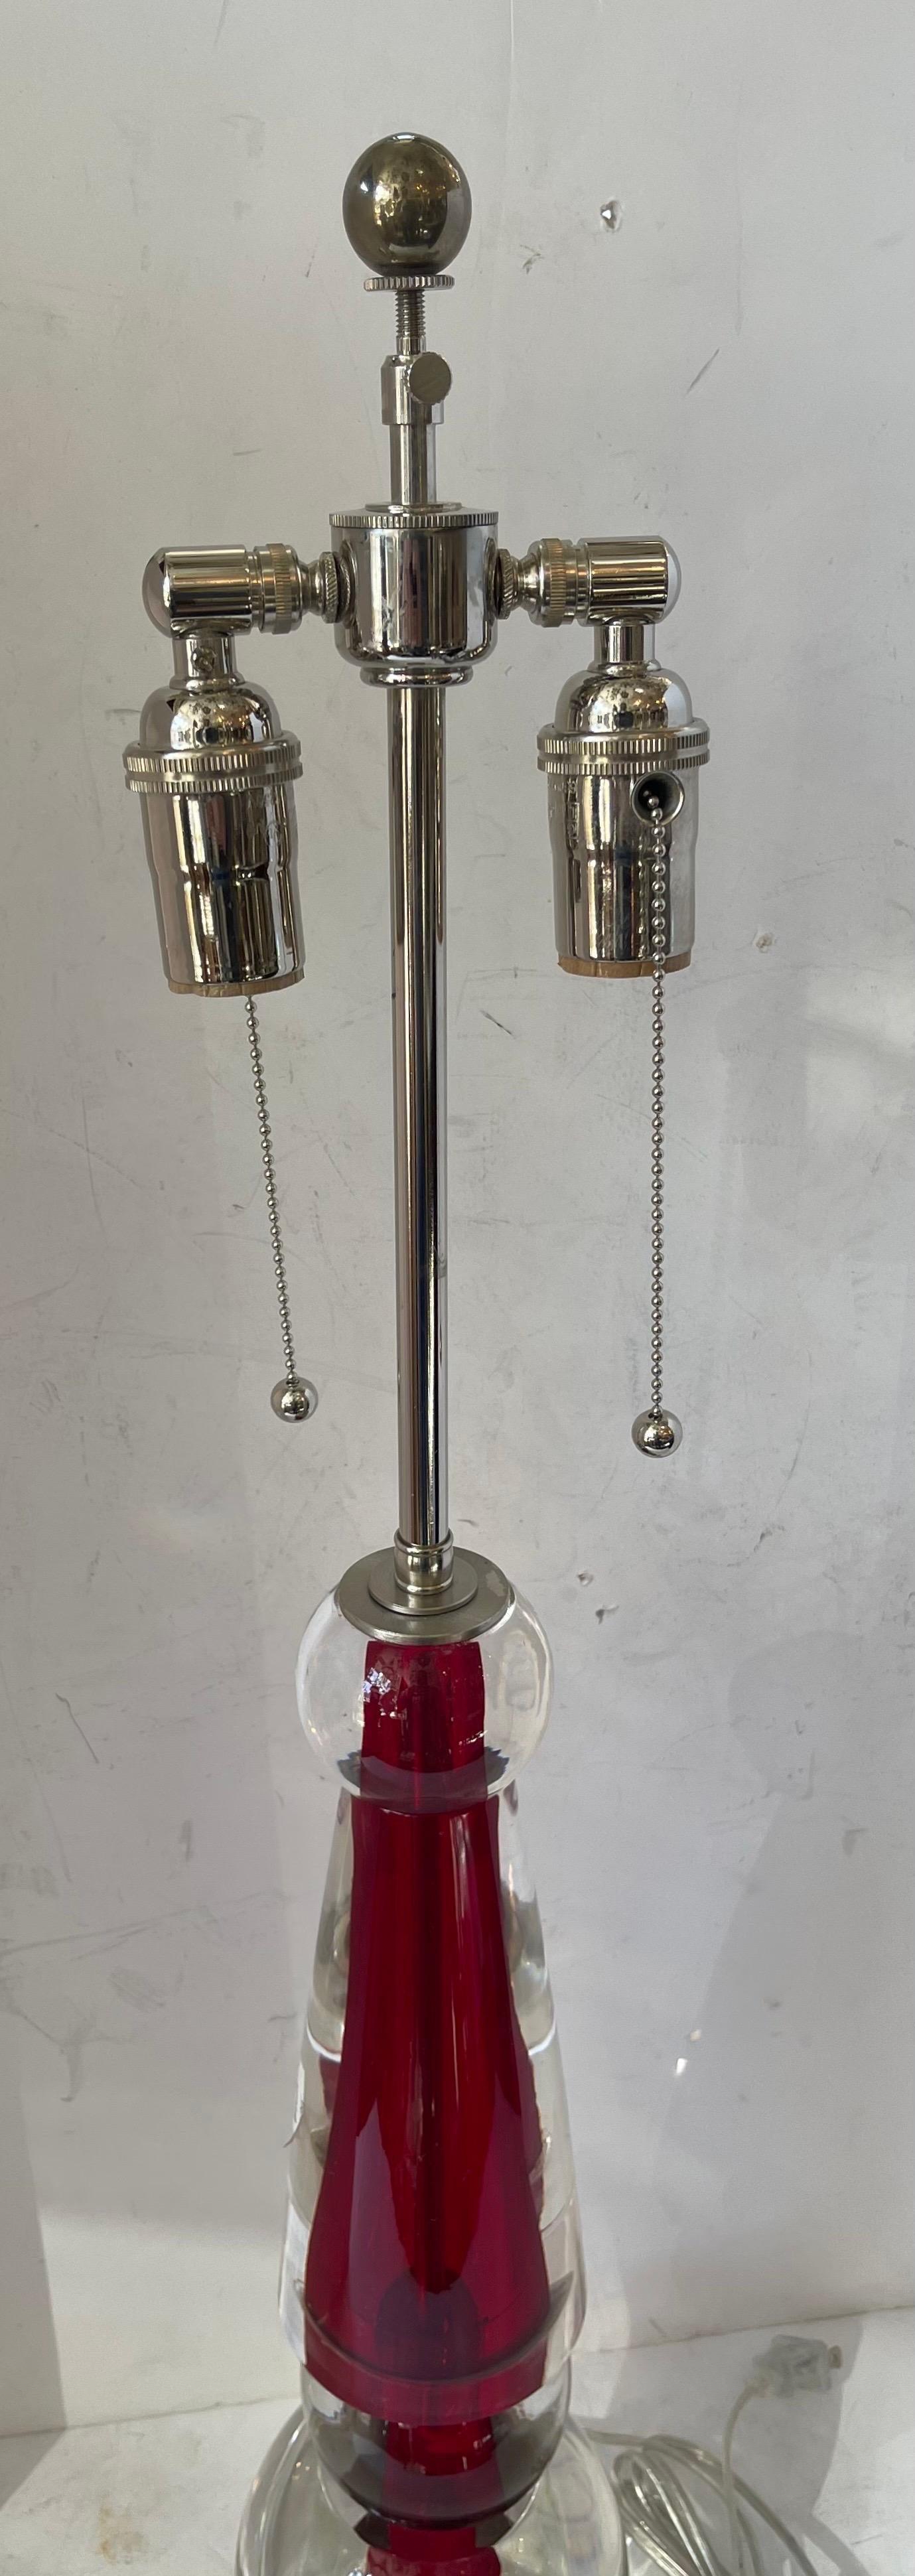 Merveilleuse lampe de table en verre clair rouge de Murano / Vénitien Lorin Marsh, datant du milieu du siècle dernier, recâblée avec deux douilles en nickel Edison.
L'autocollant original de la salle d'exposition est toujours présent avec le prix de